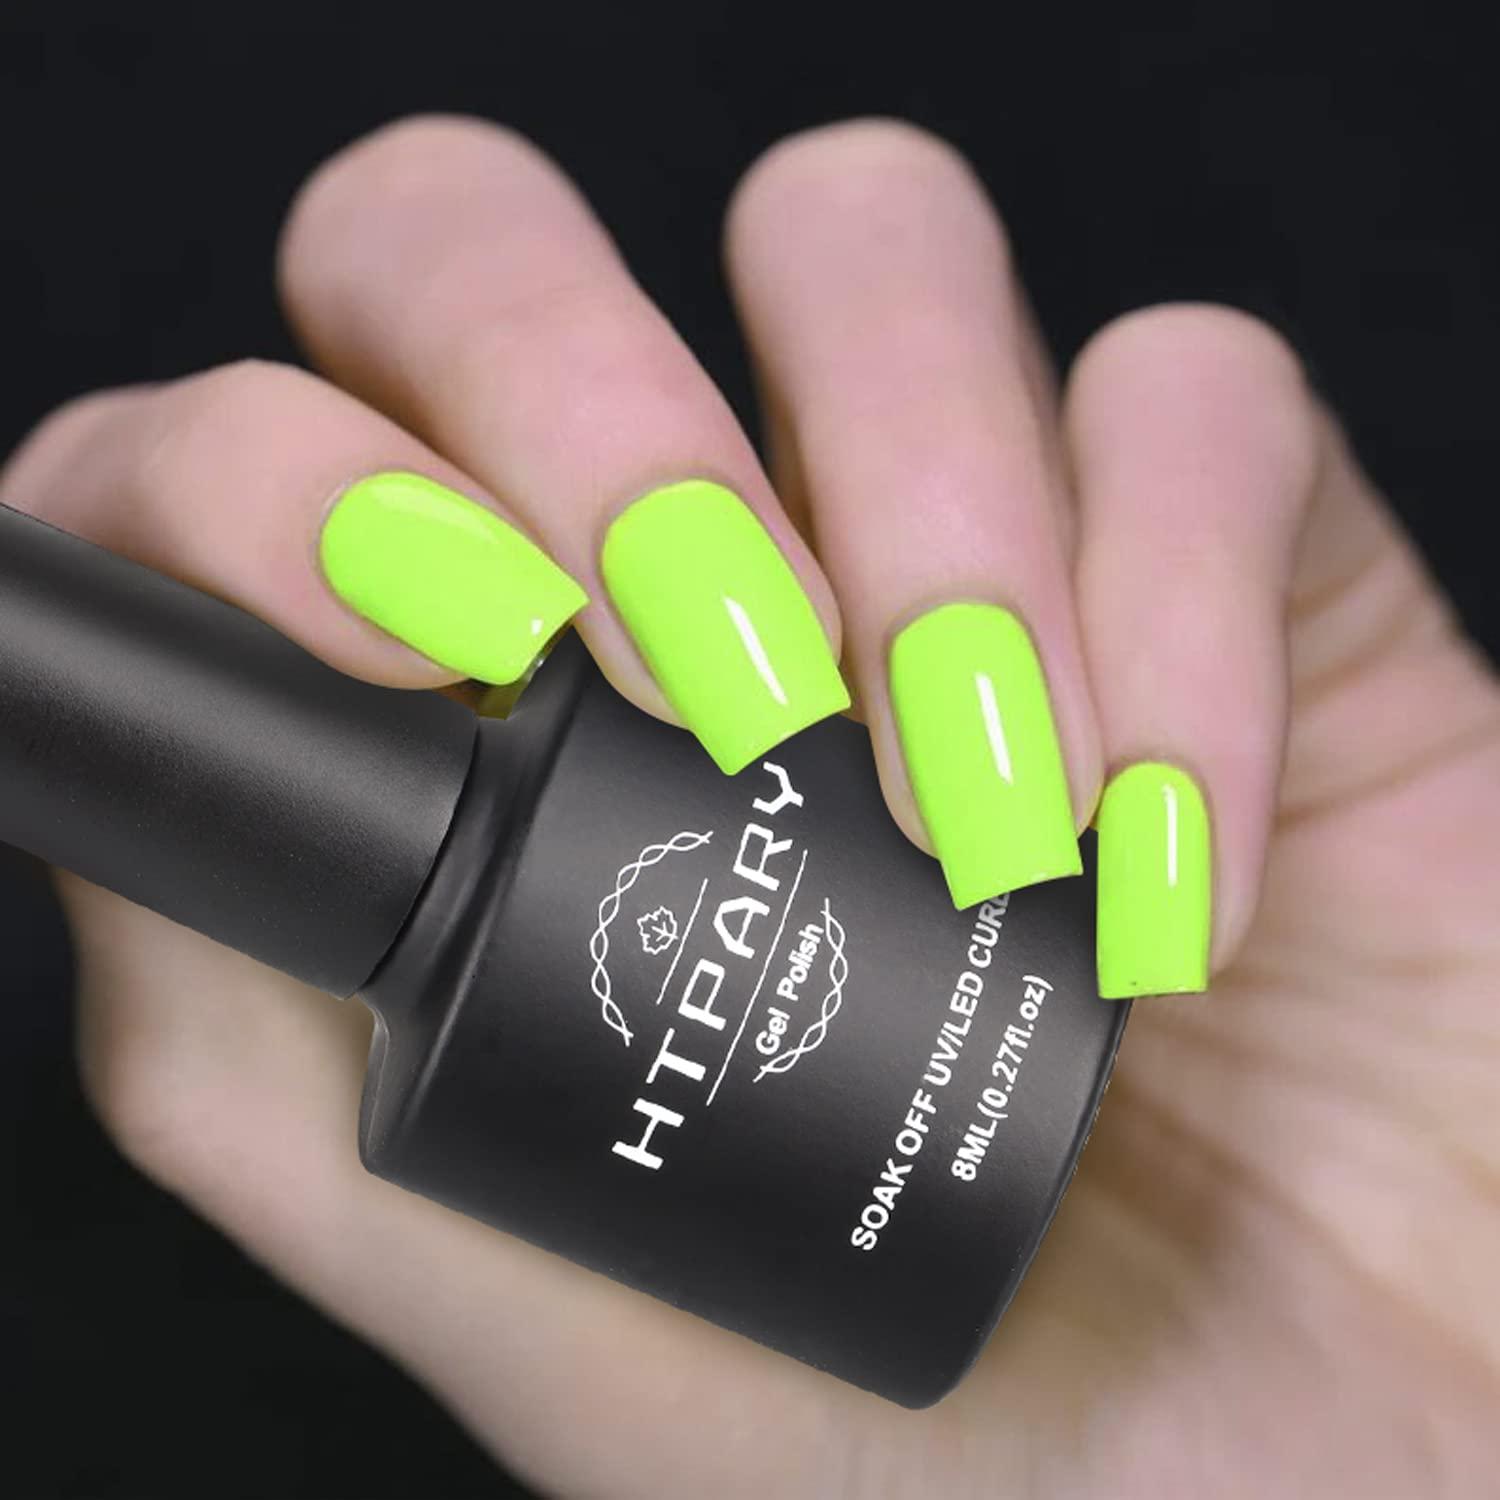 different shades of green | Nail colors, Green nails, Nails